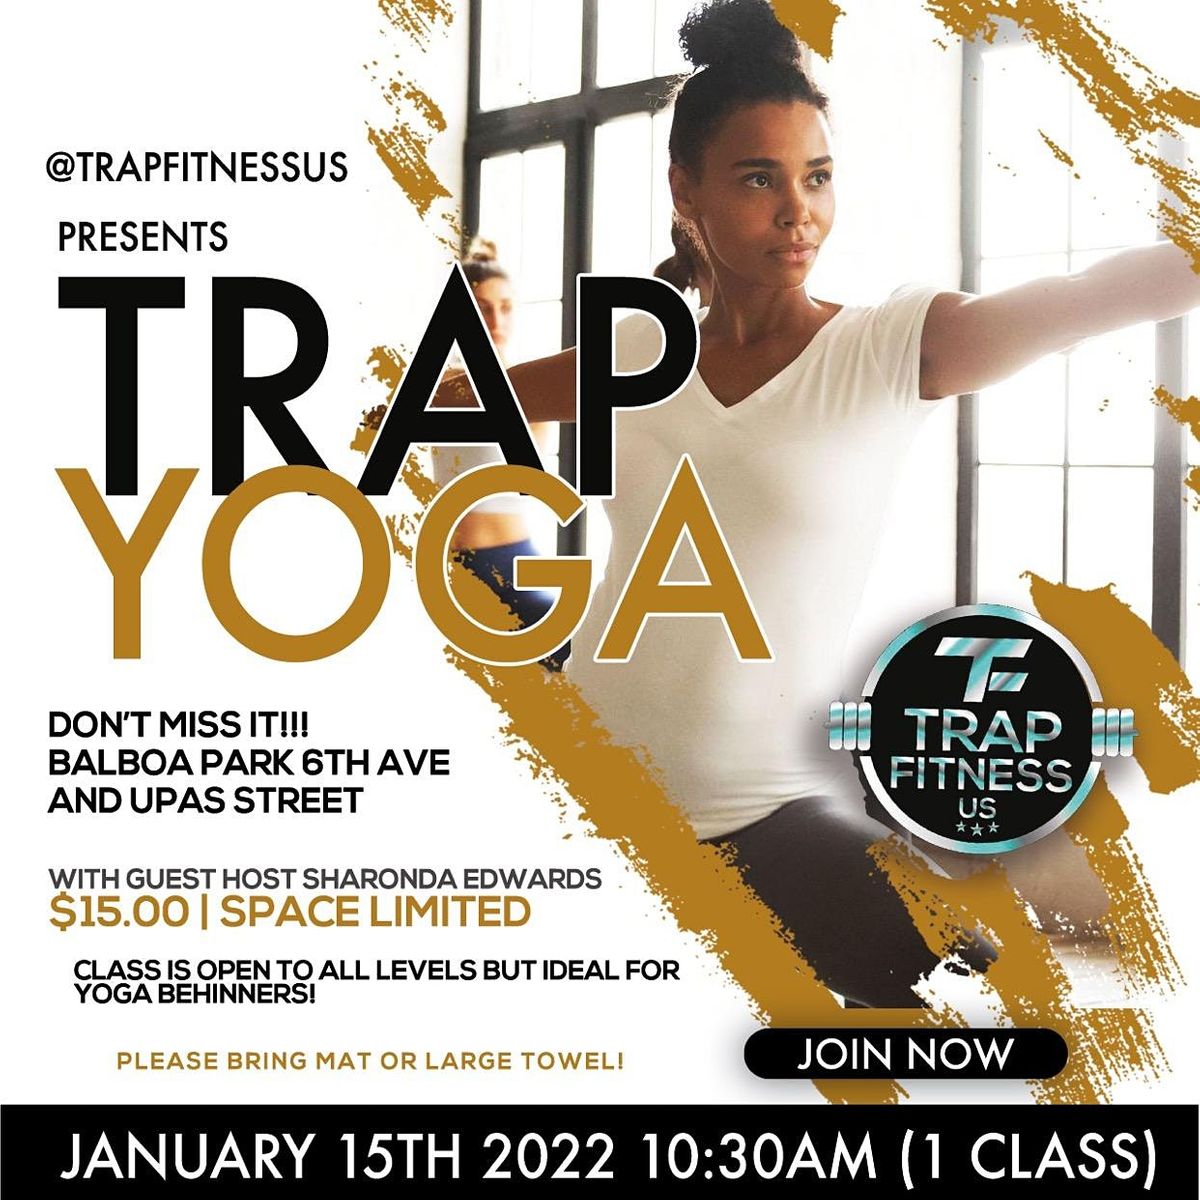 Trap fitness presents TRAP YOGA